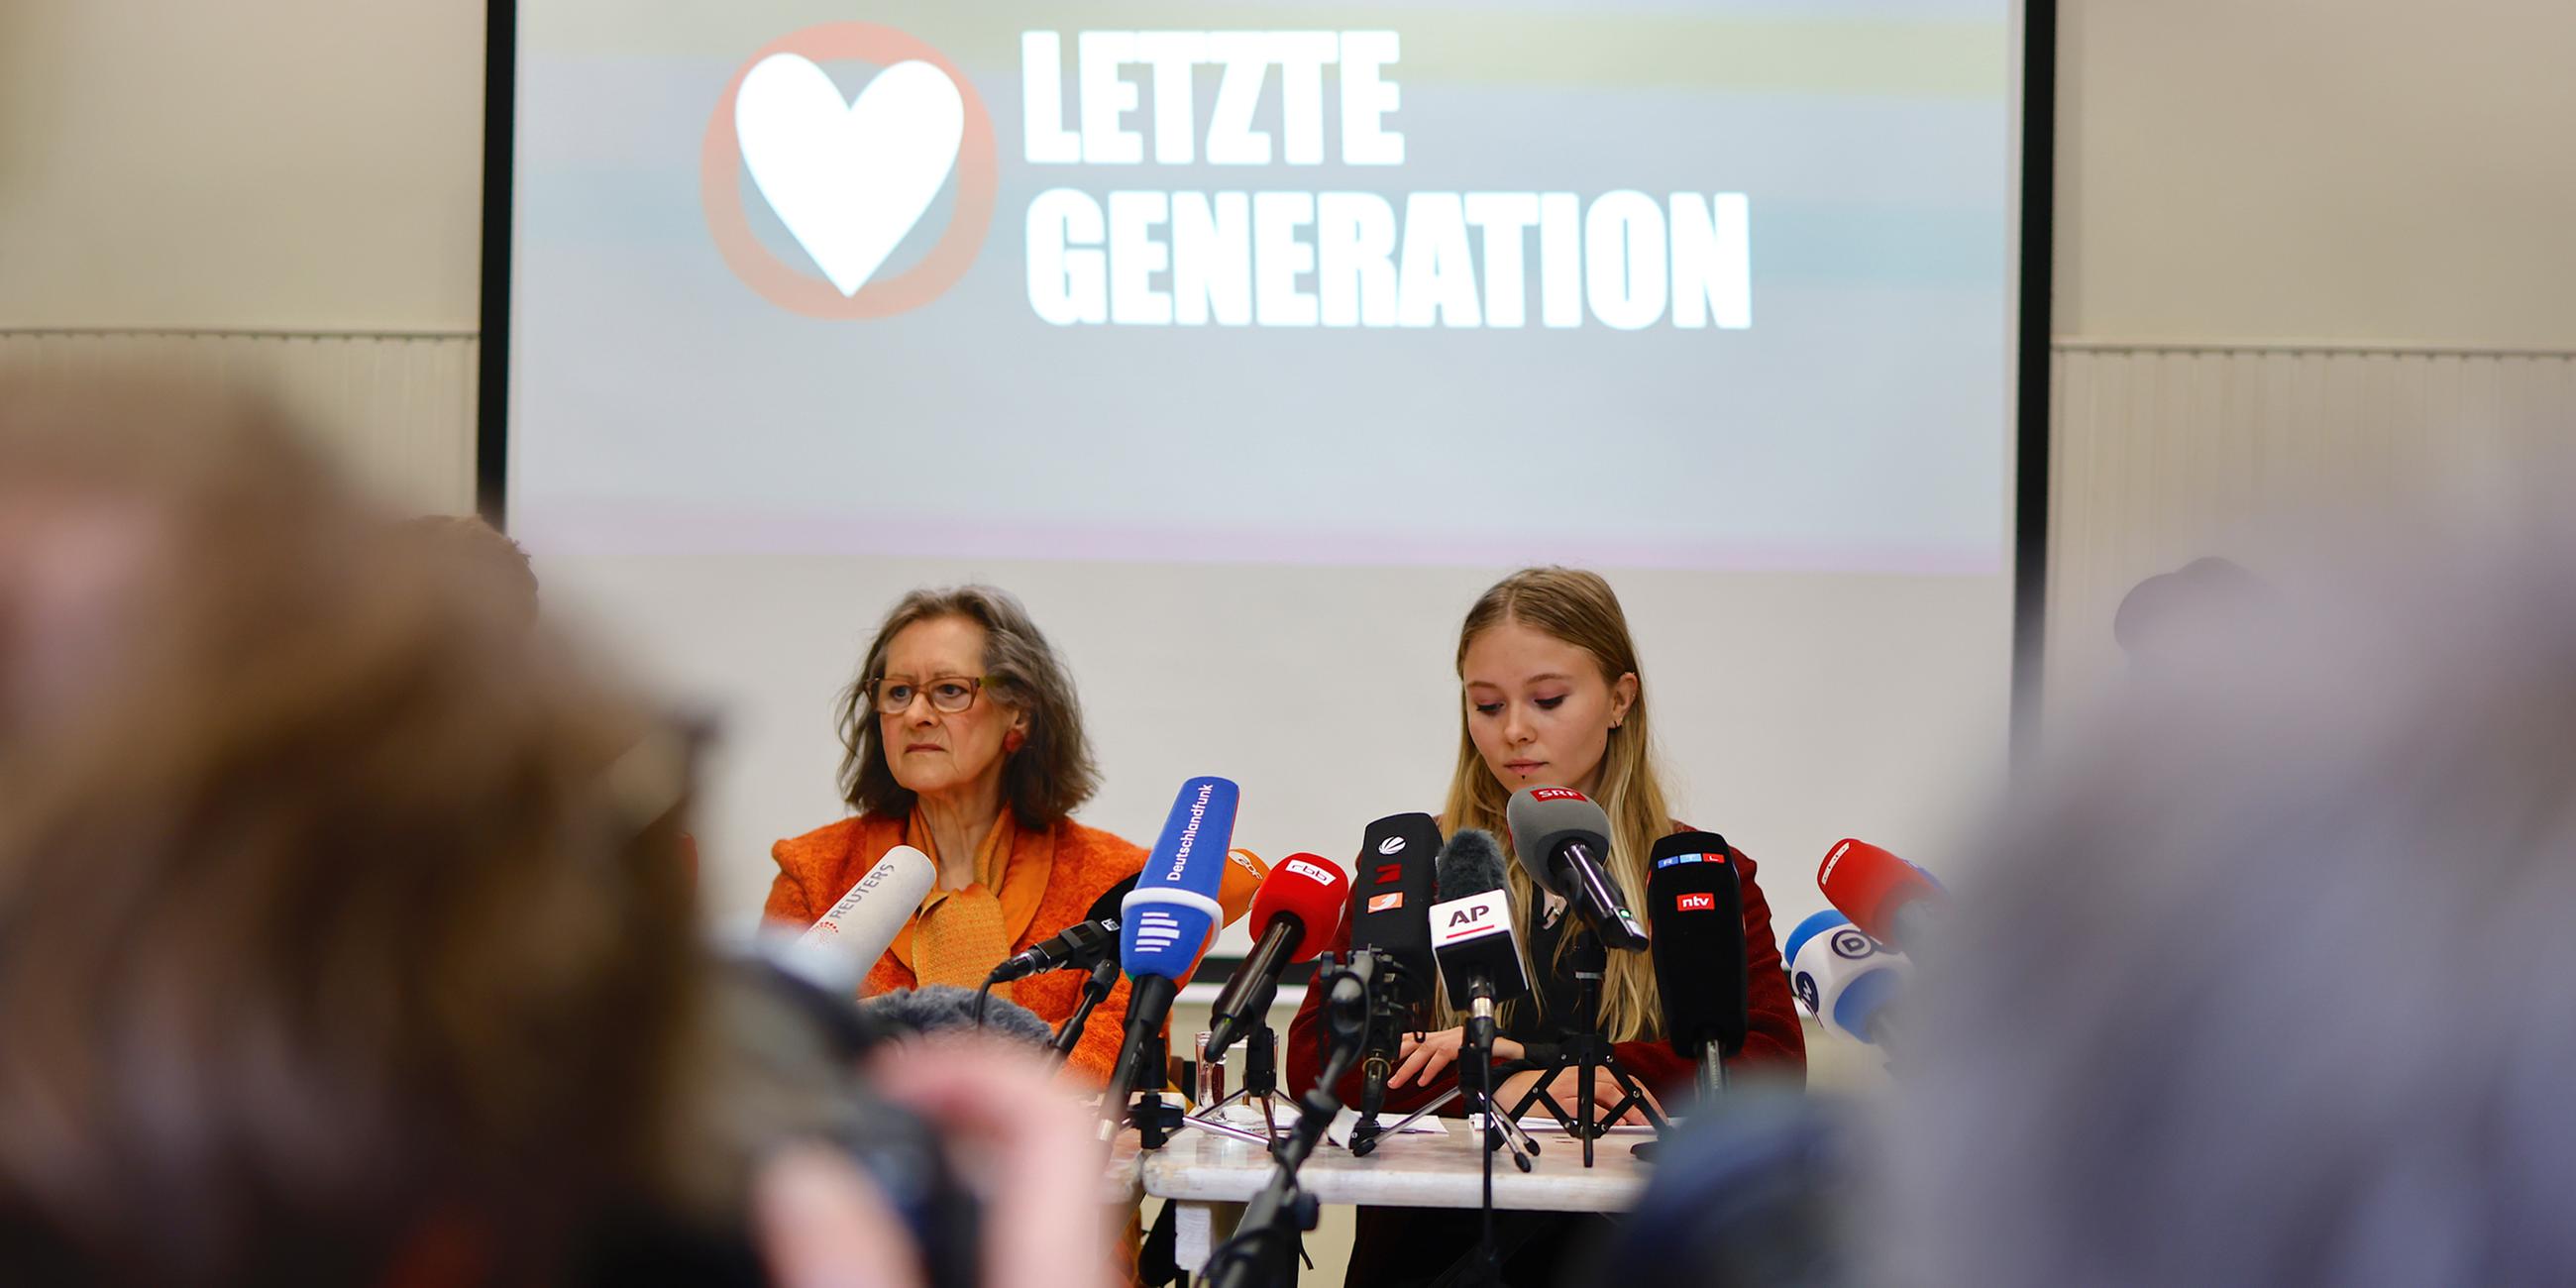 Pressekonferenz "Letzte Generation"